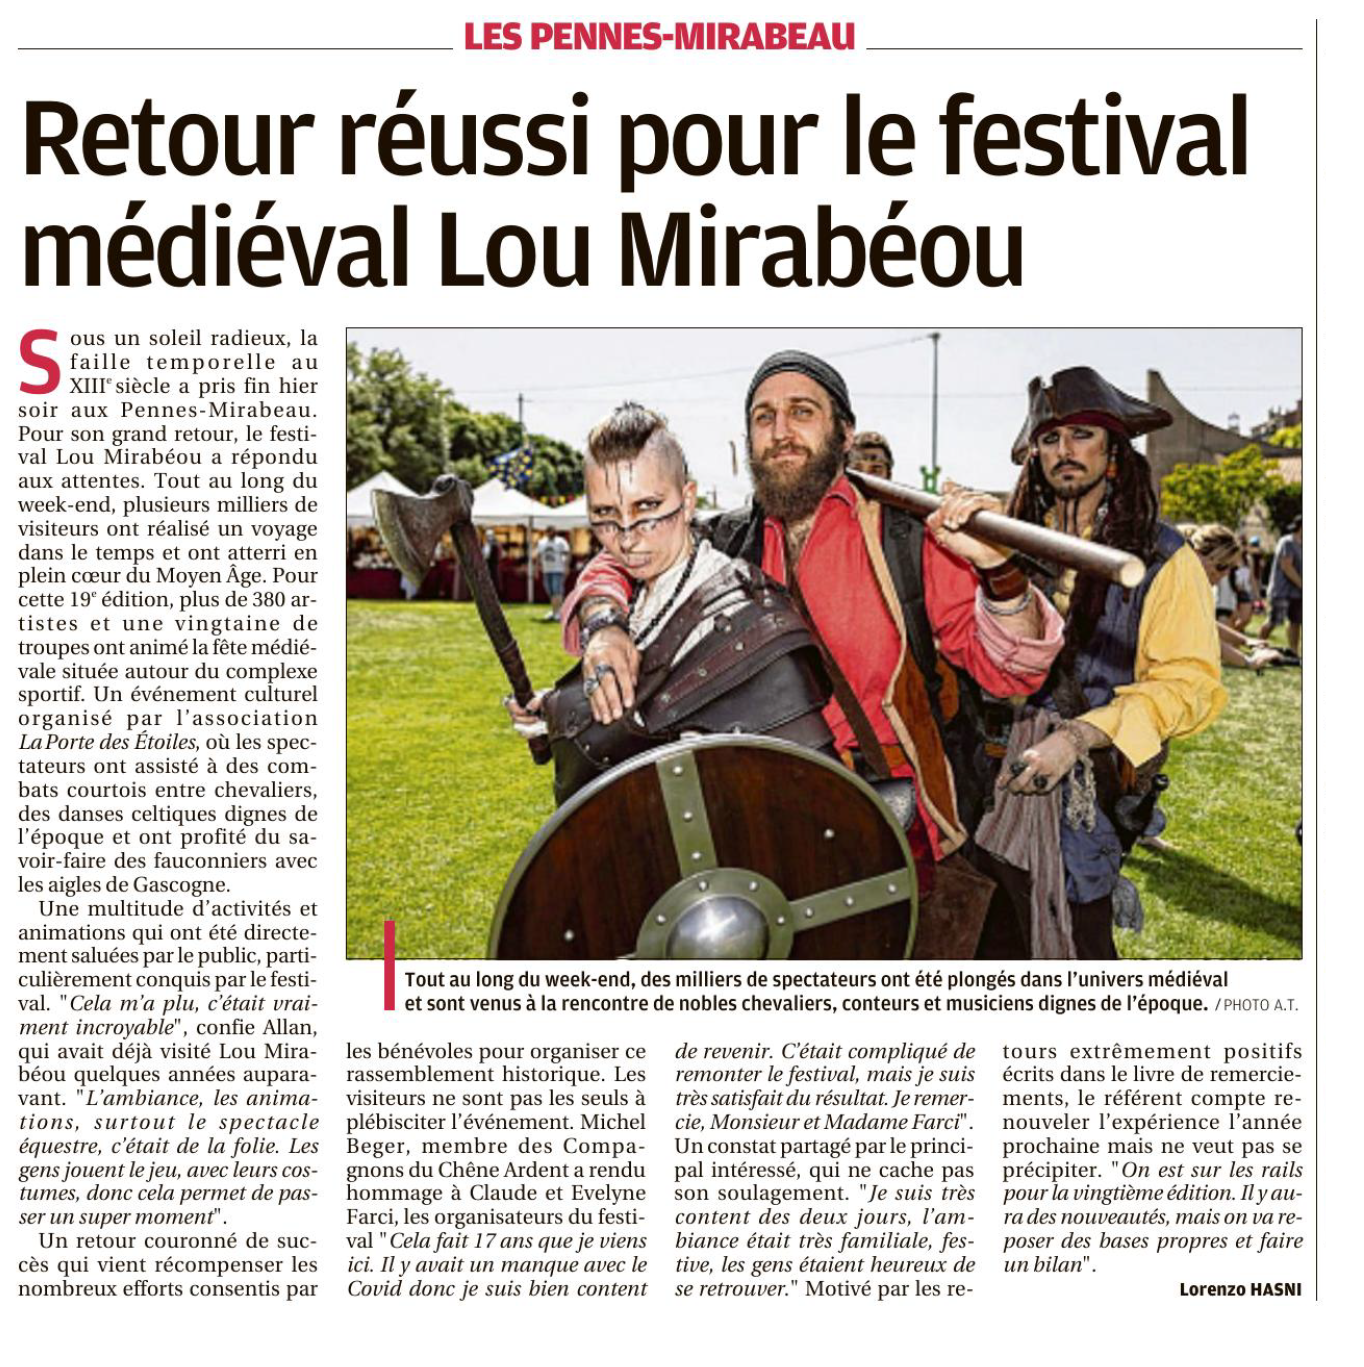 La Provence : Retour réussi pour le festival Lou Mirabeou 2022